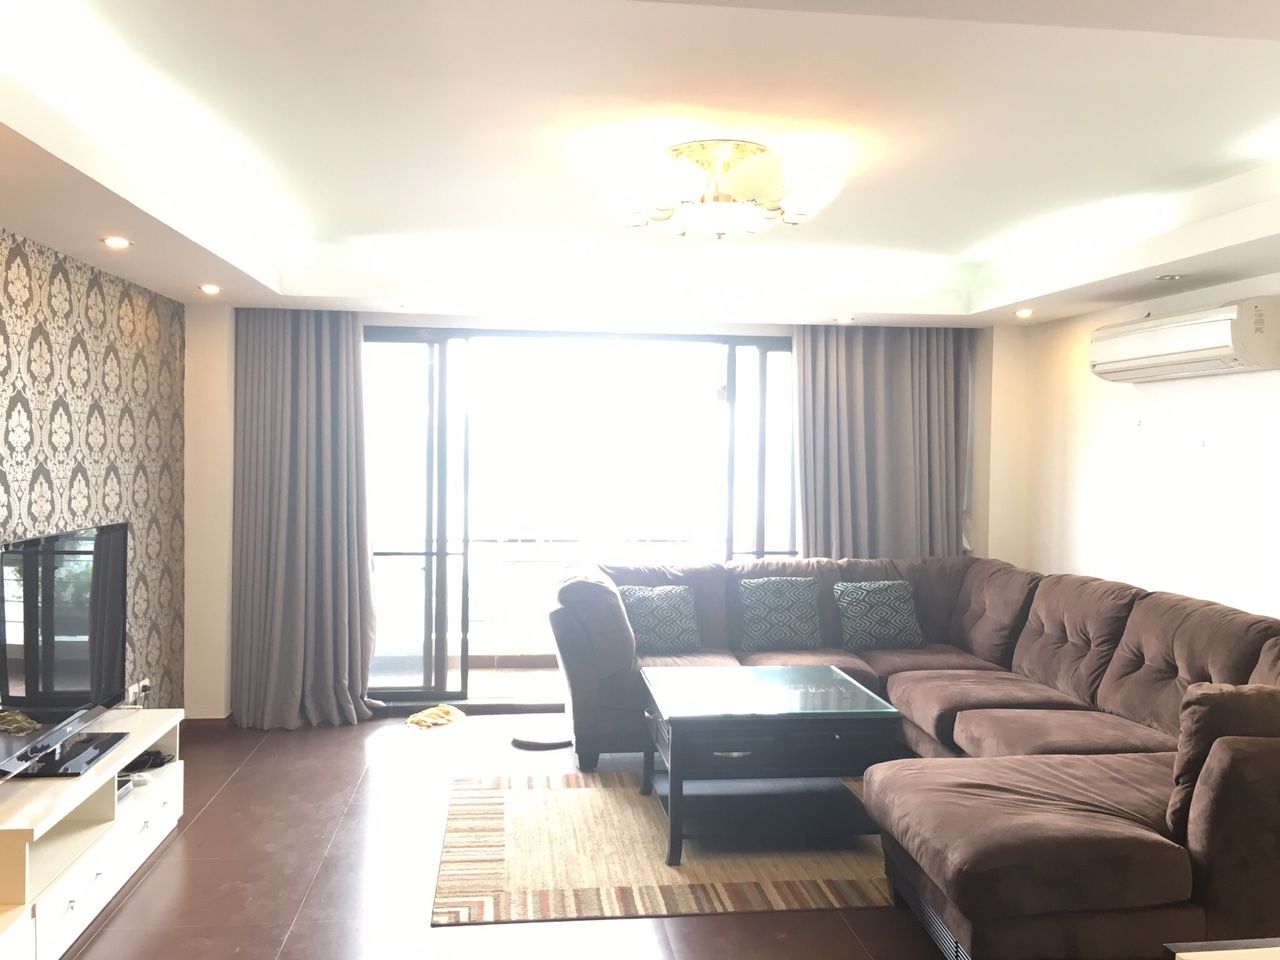 Cần cho thuê căn hộ dịch vụ 90m2 tại Nhật Chiêu, quận Tây Hồ